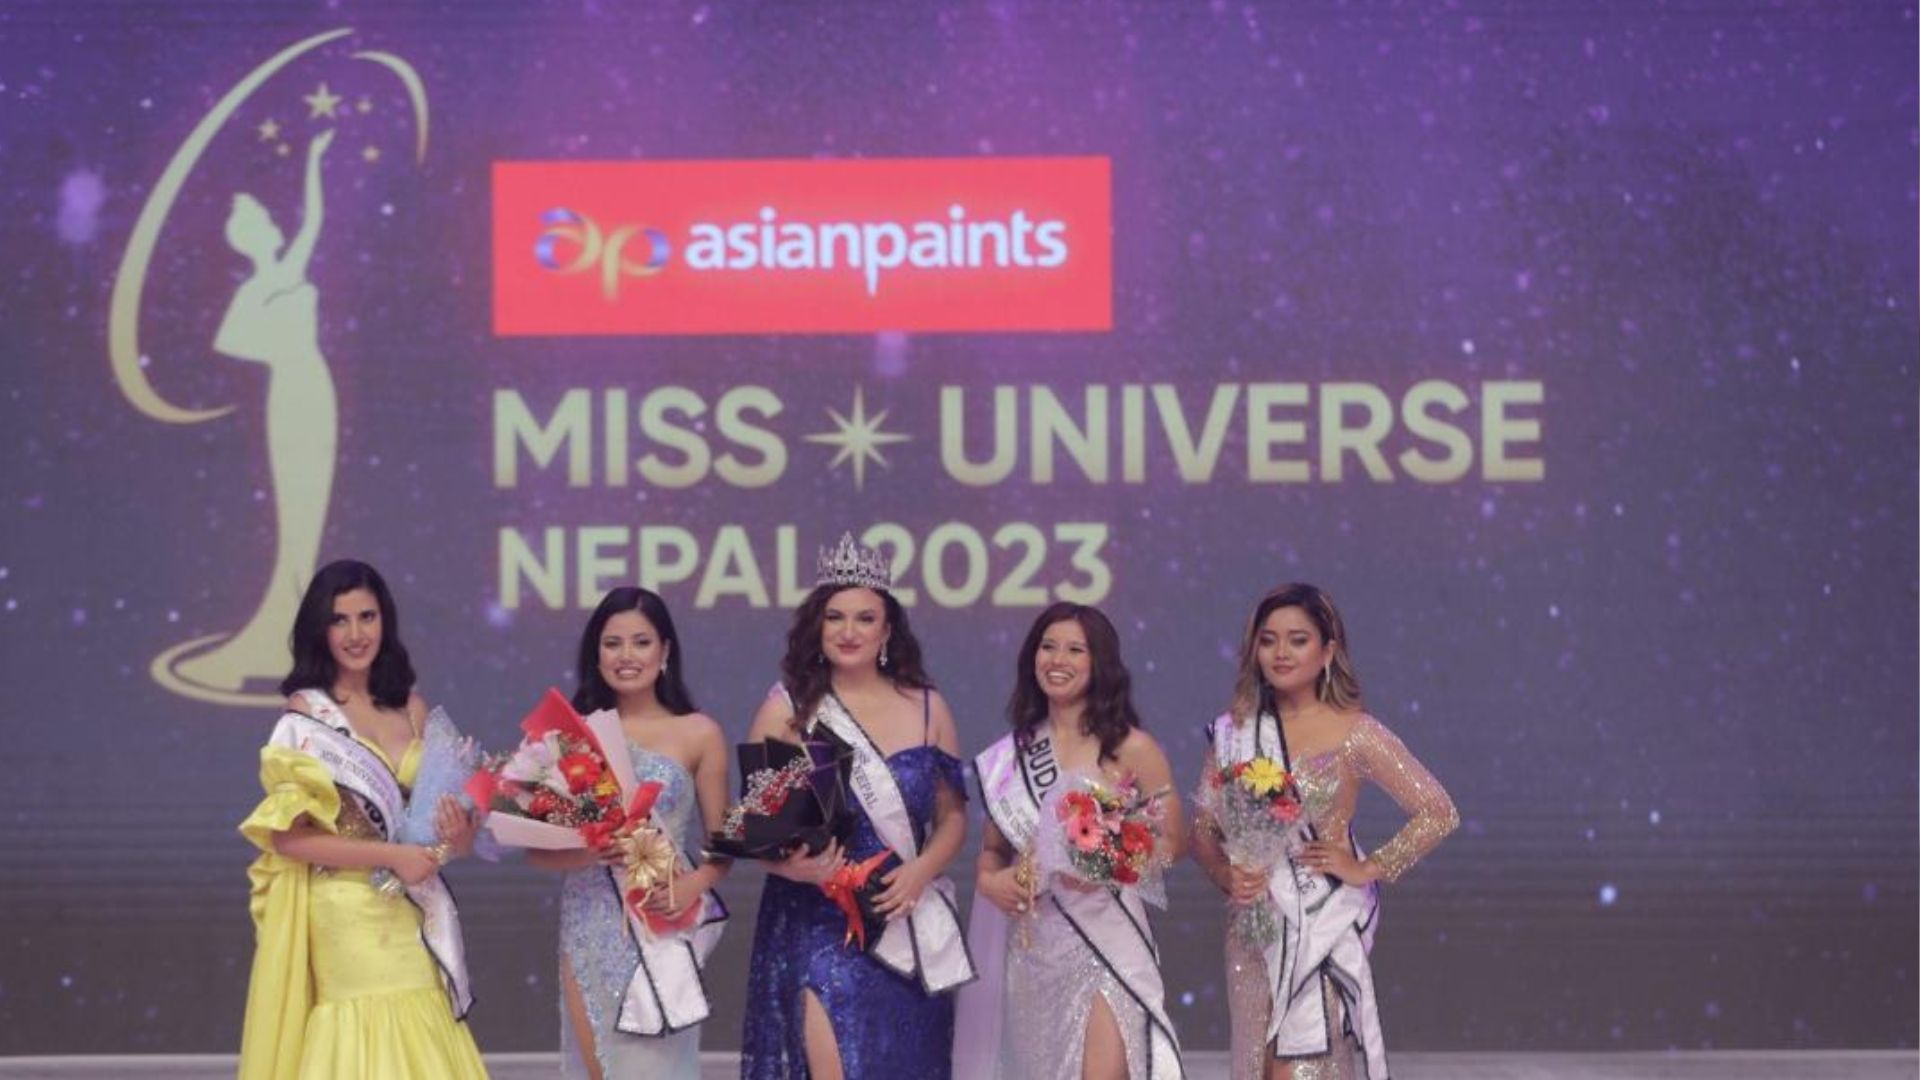 जेन दिपिका ग्यारेट बनिन् एशियन पेन्ट्स मिस युनिभर्स नेपाल २०२३